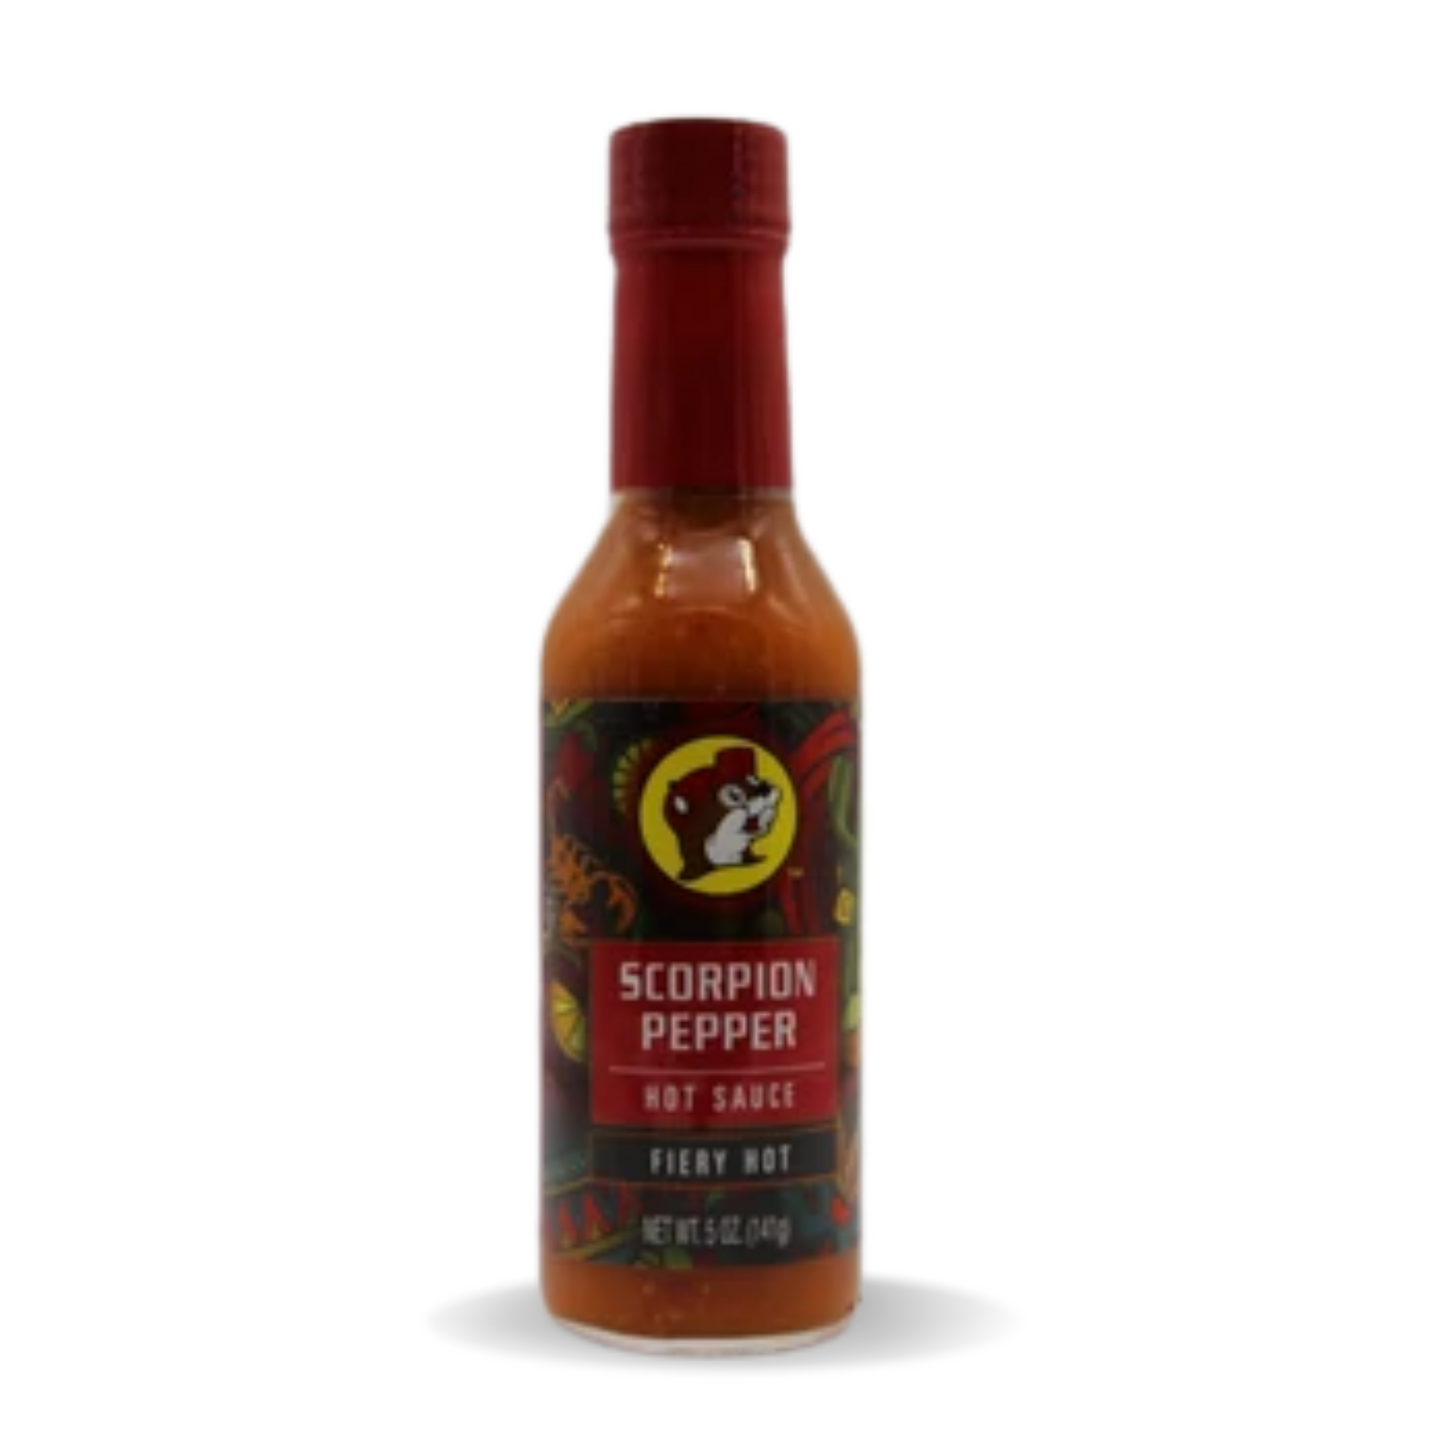 Buc-ee's Scorpion Pepper Hot Sauce - Fiery Hot